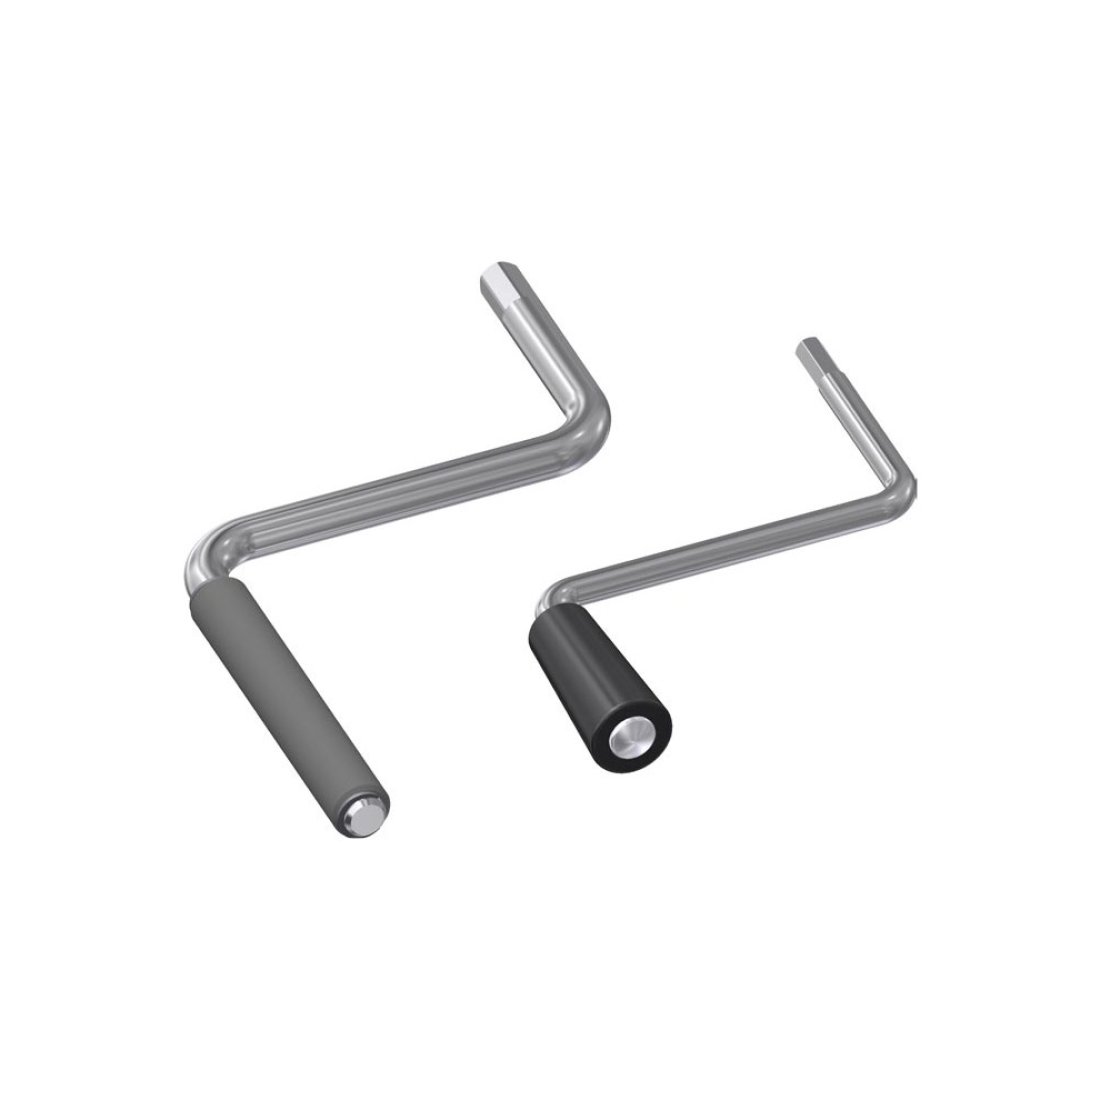 Handkurbel - Kurbelkörper Stahl / Ketterer Antriebe